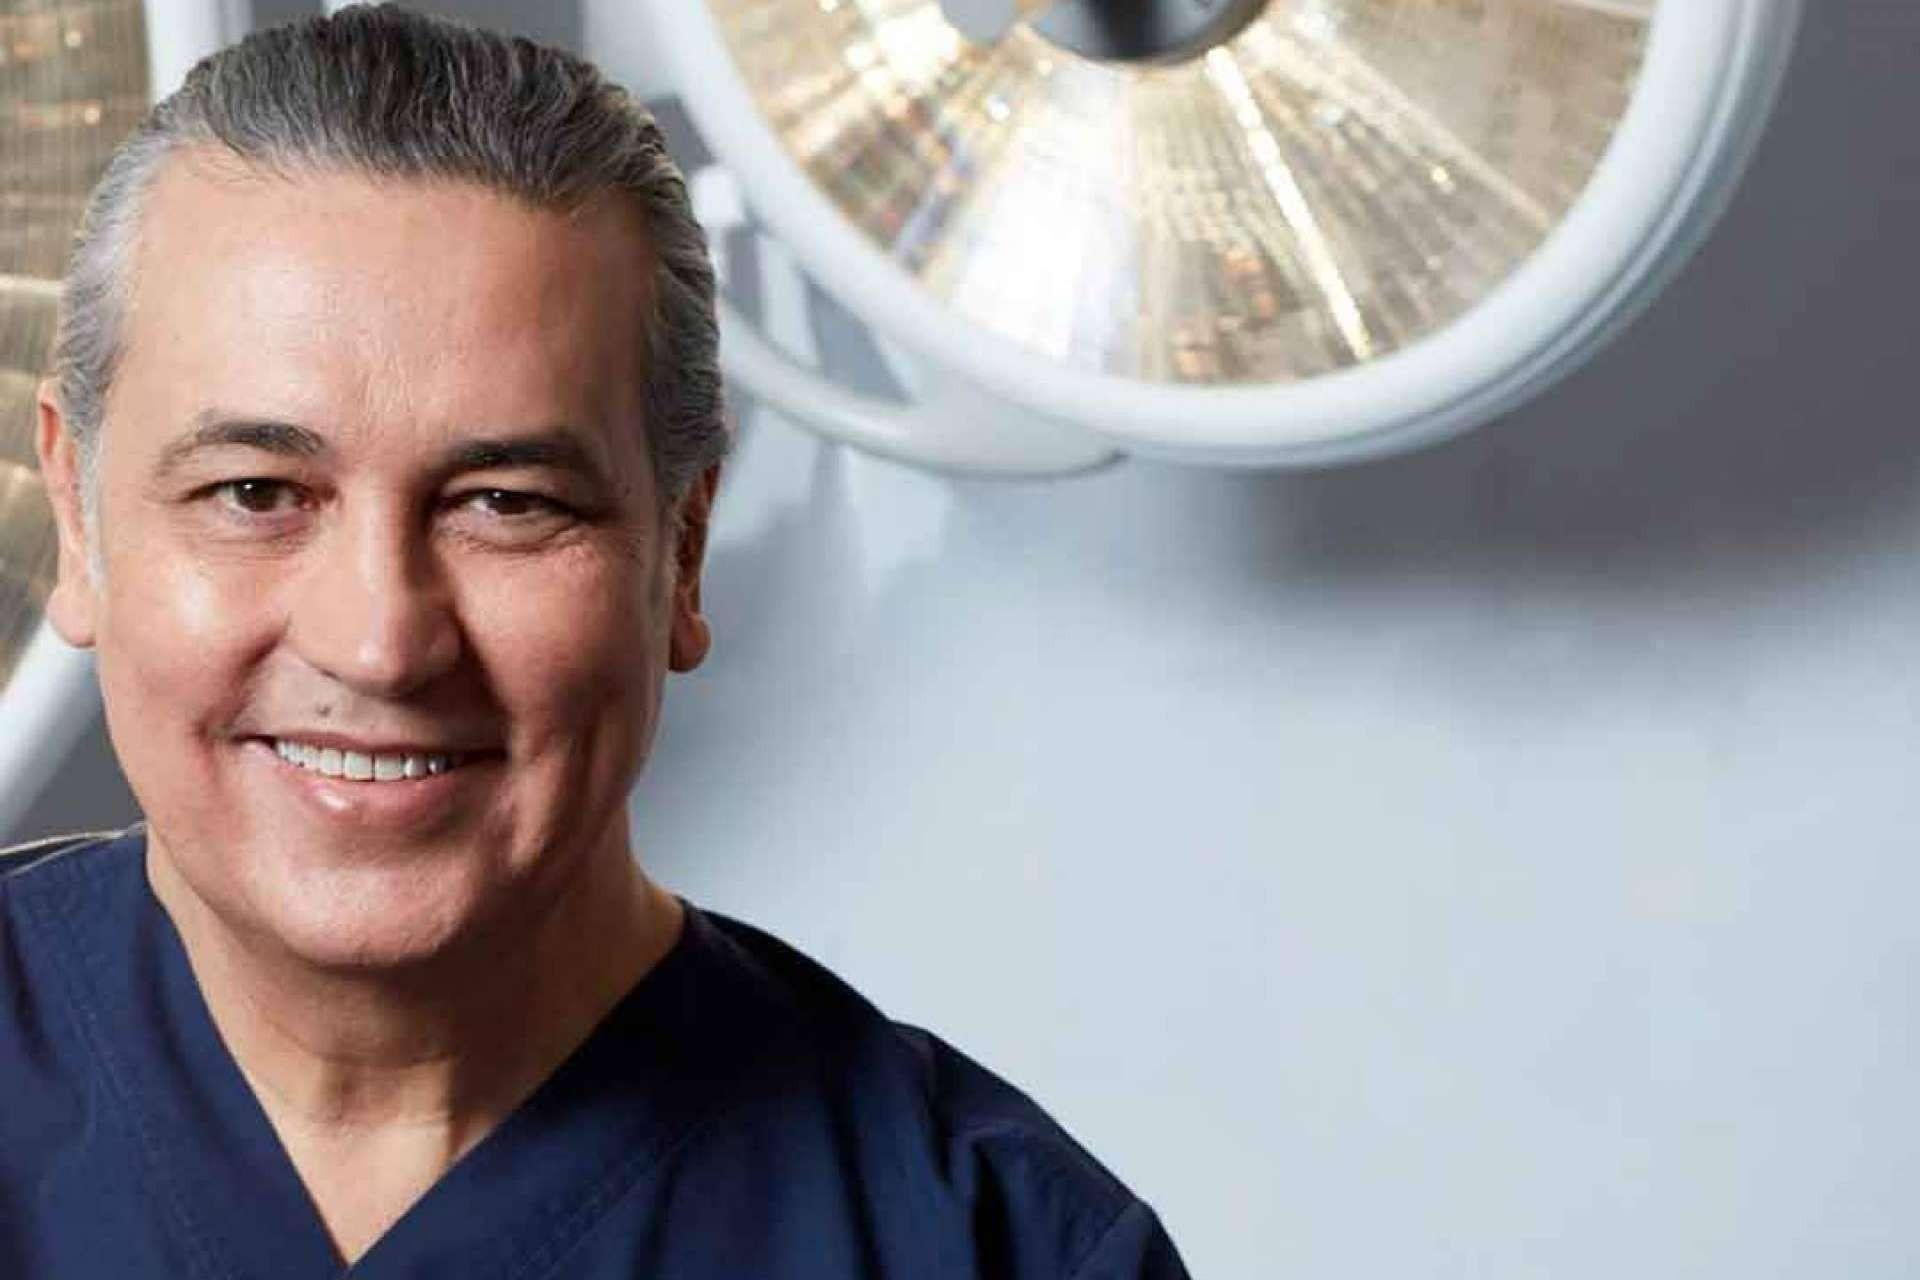  Dr. Jorge Planas es uno de los mejores cirujanos plásticos, según Forbes 